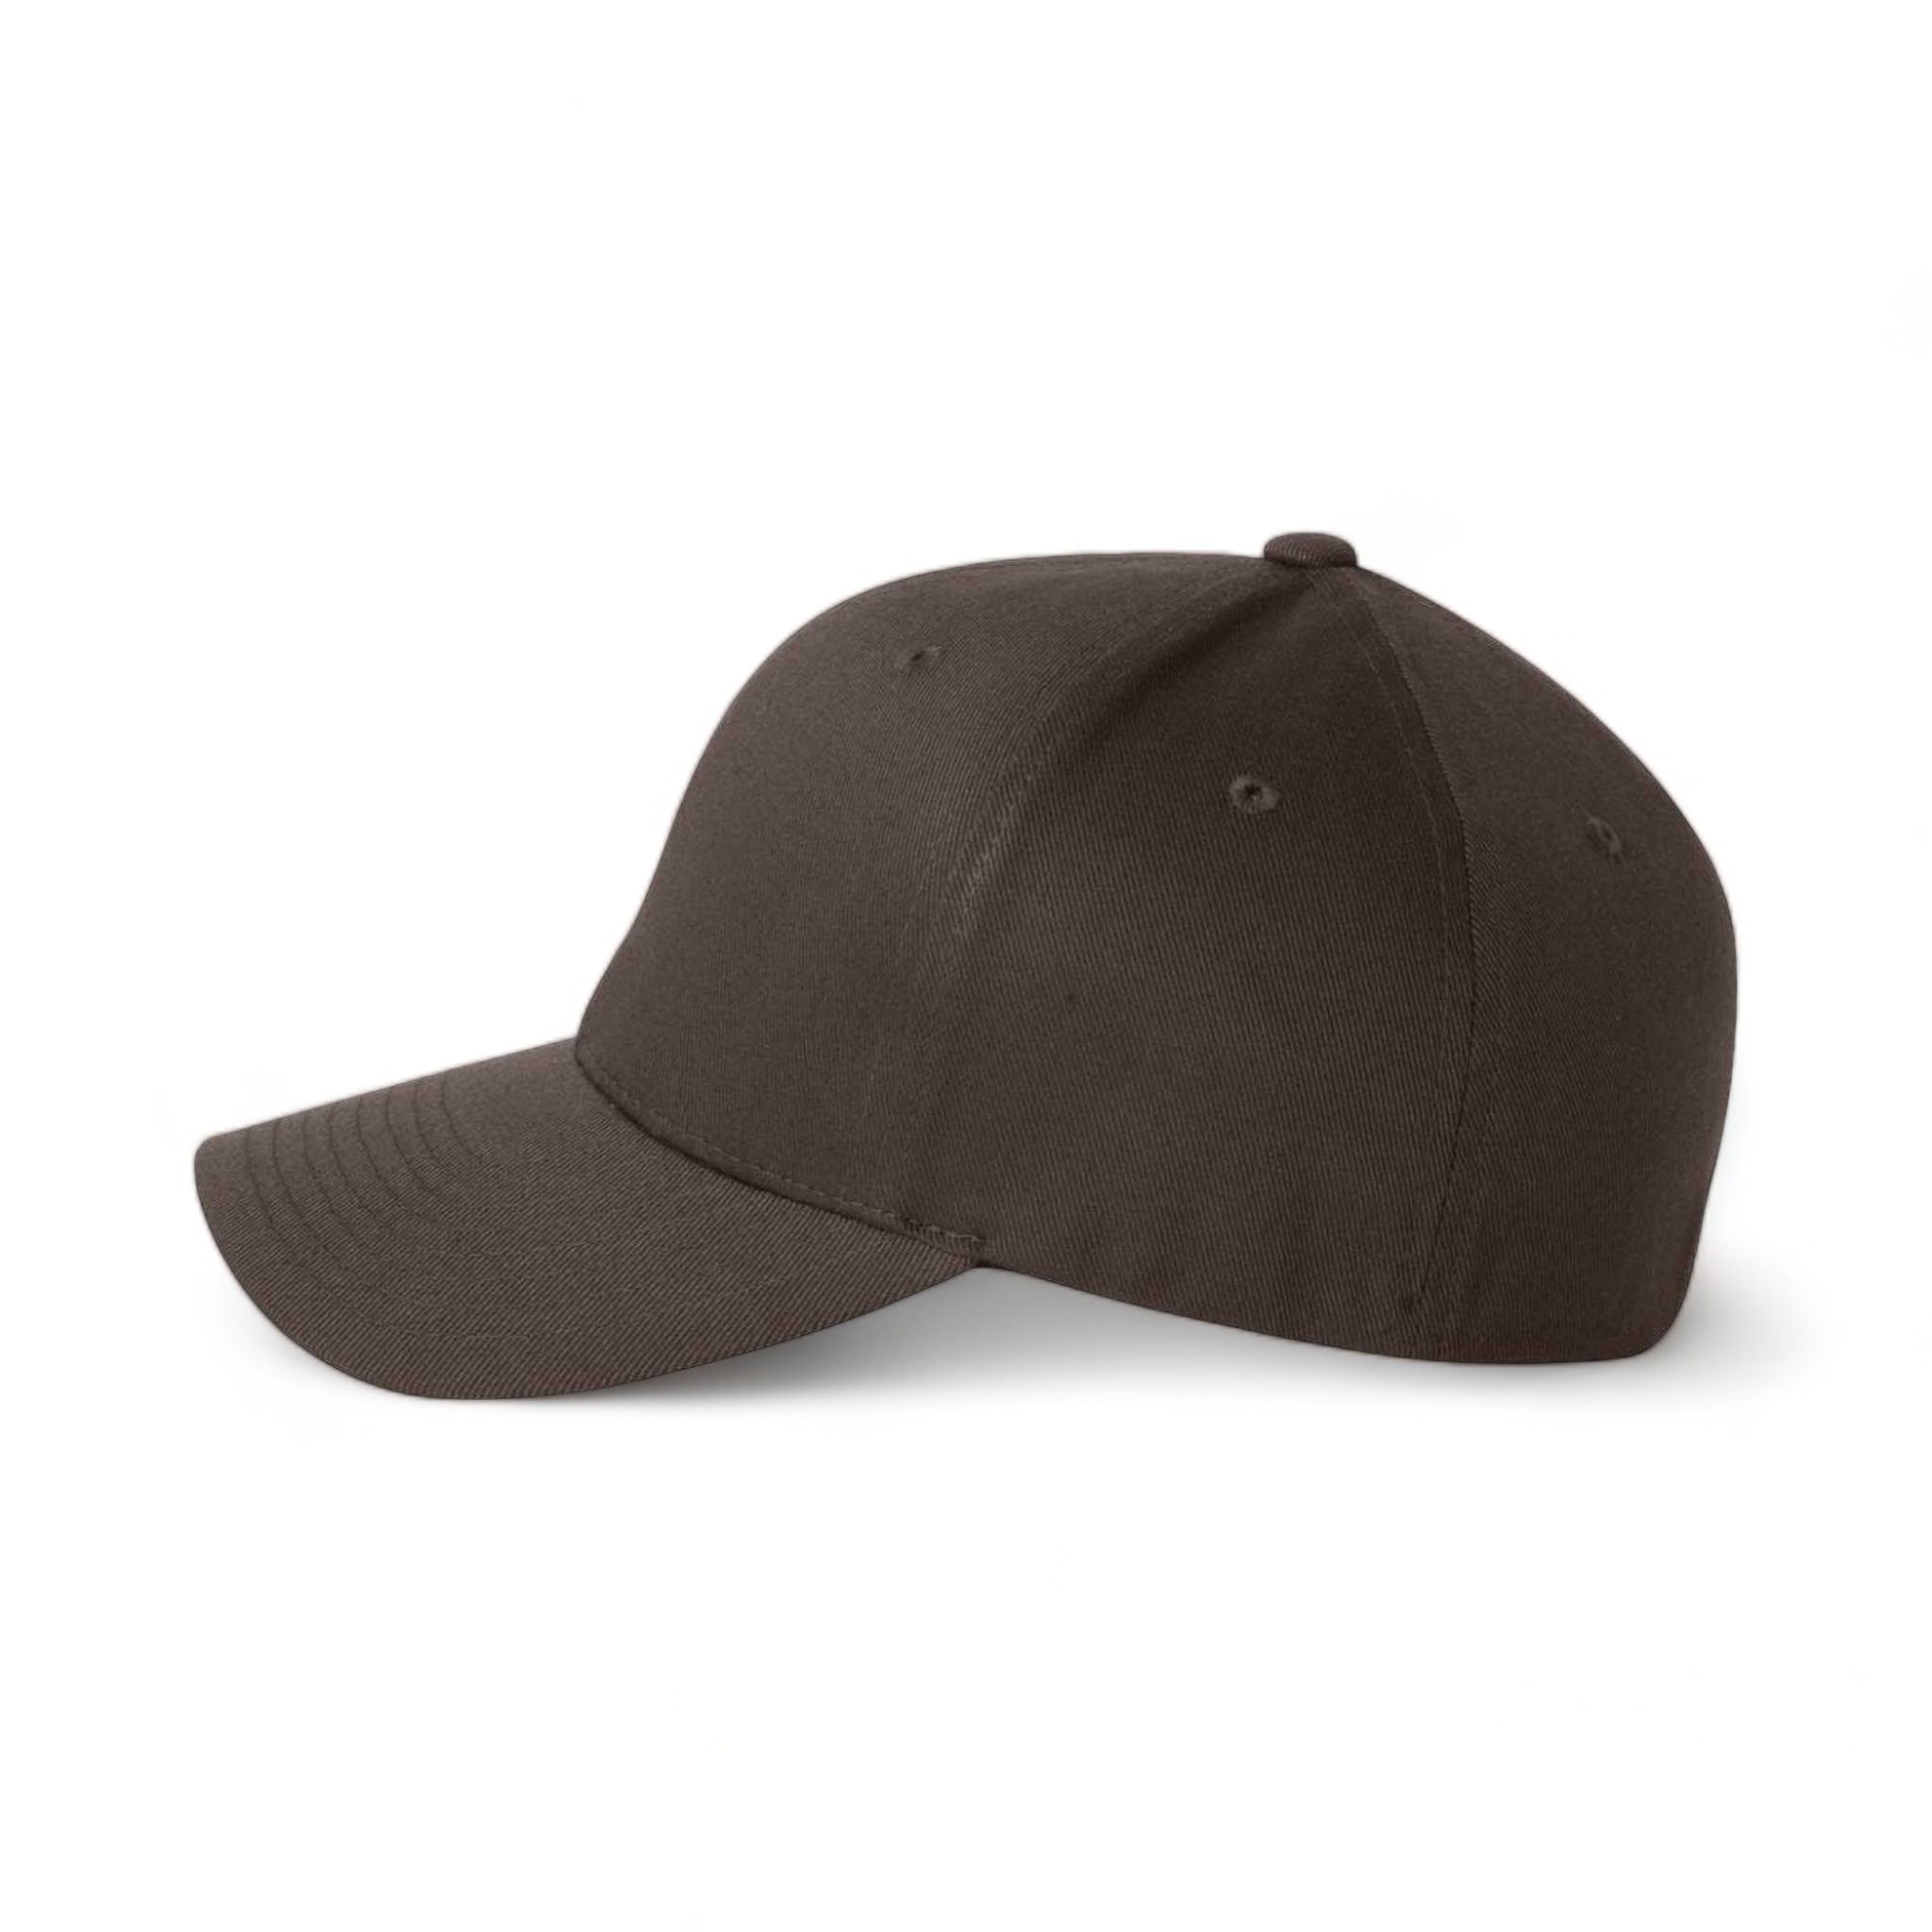 Side view of Flexfit 6277 custom hat in brown